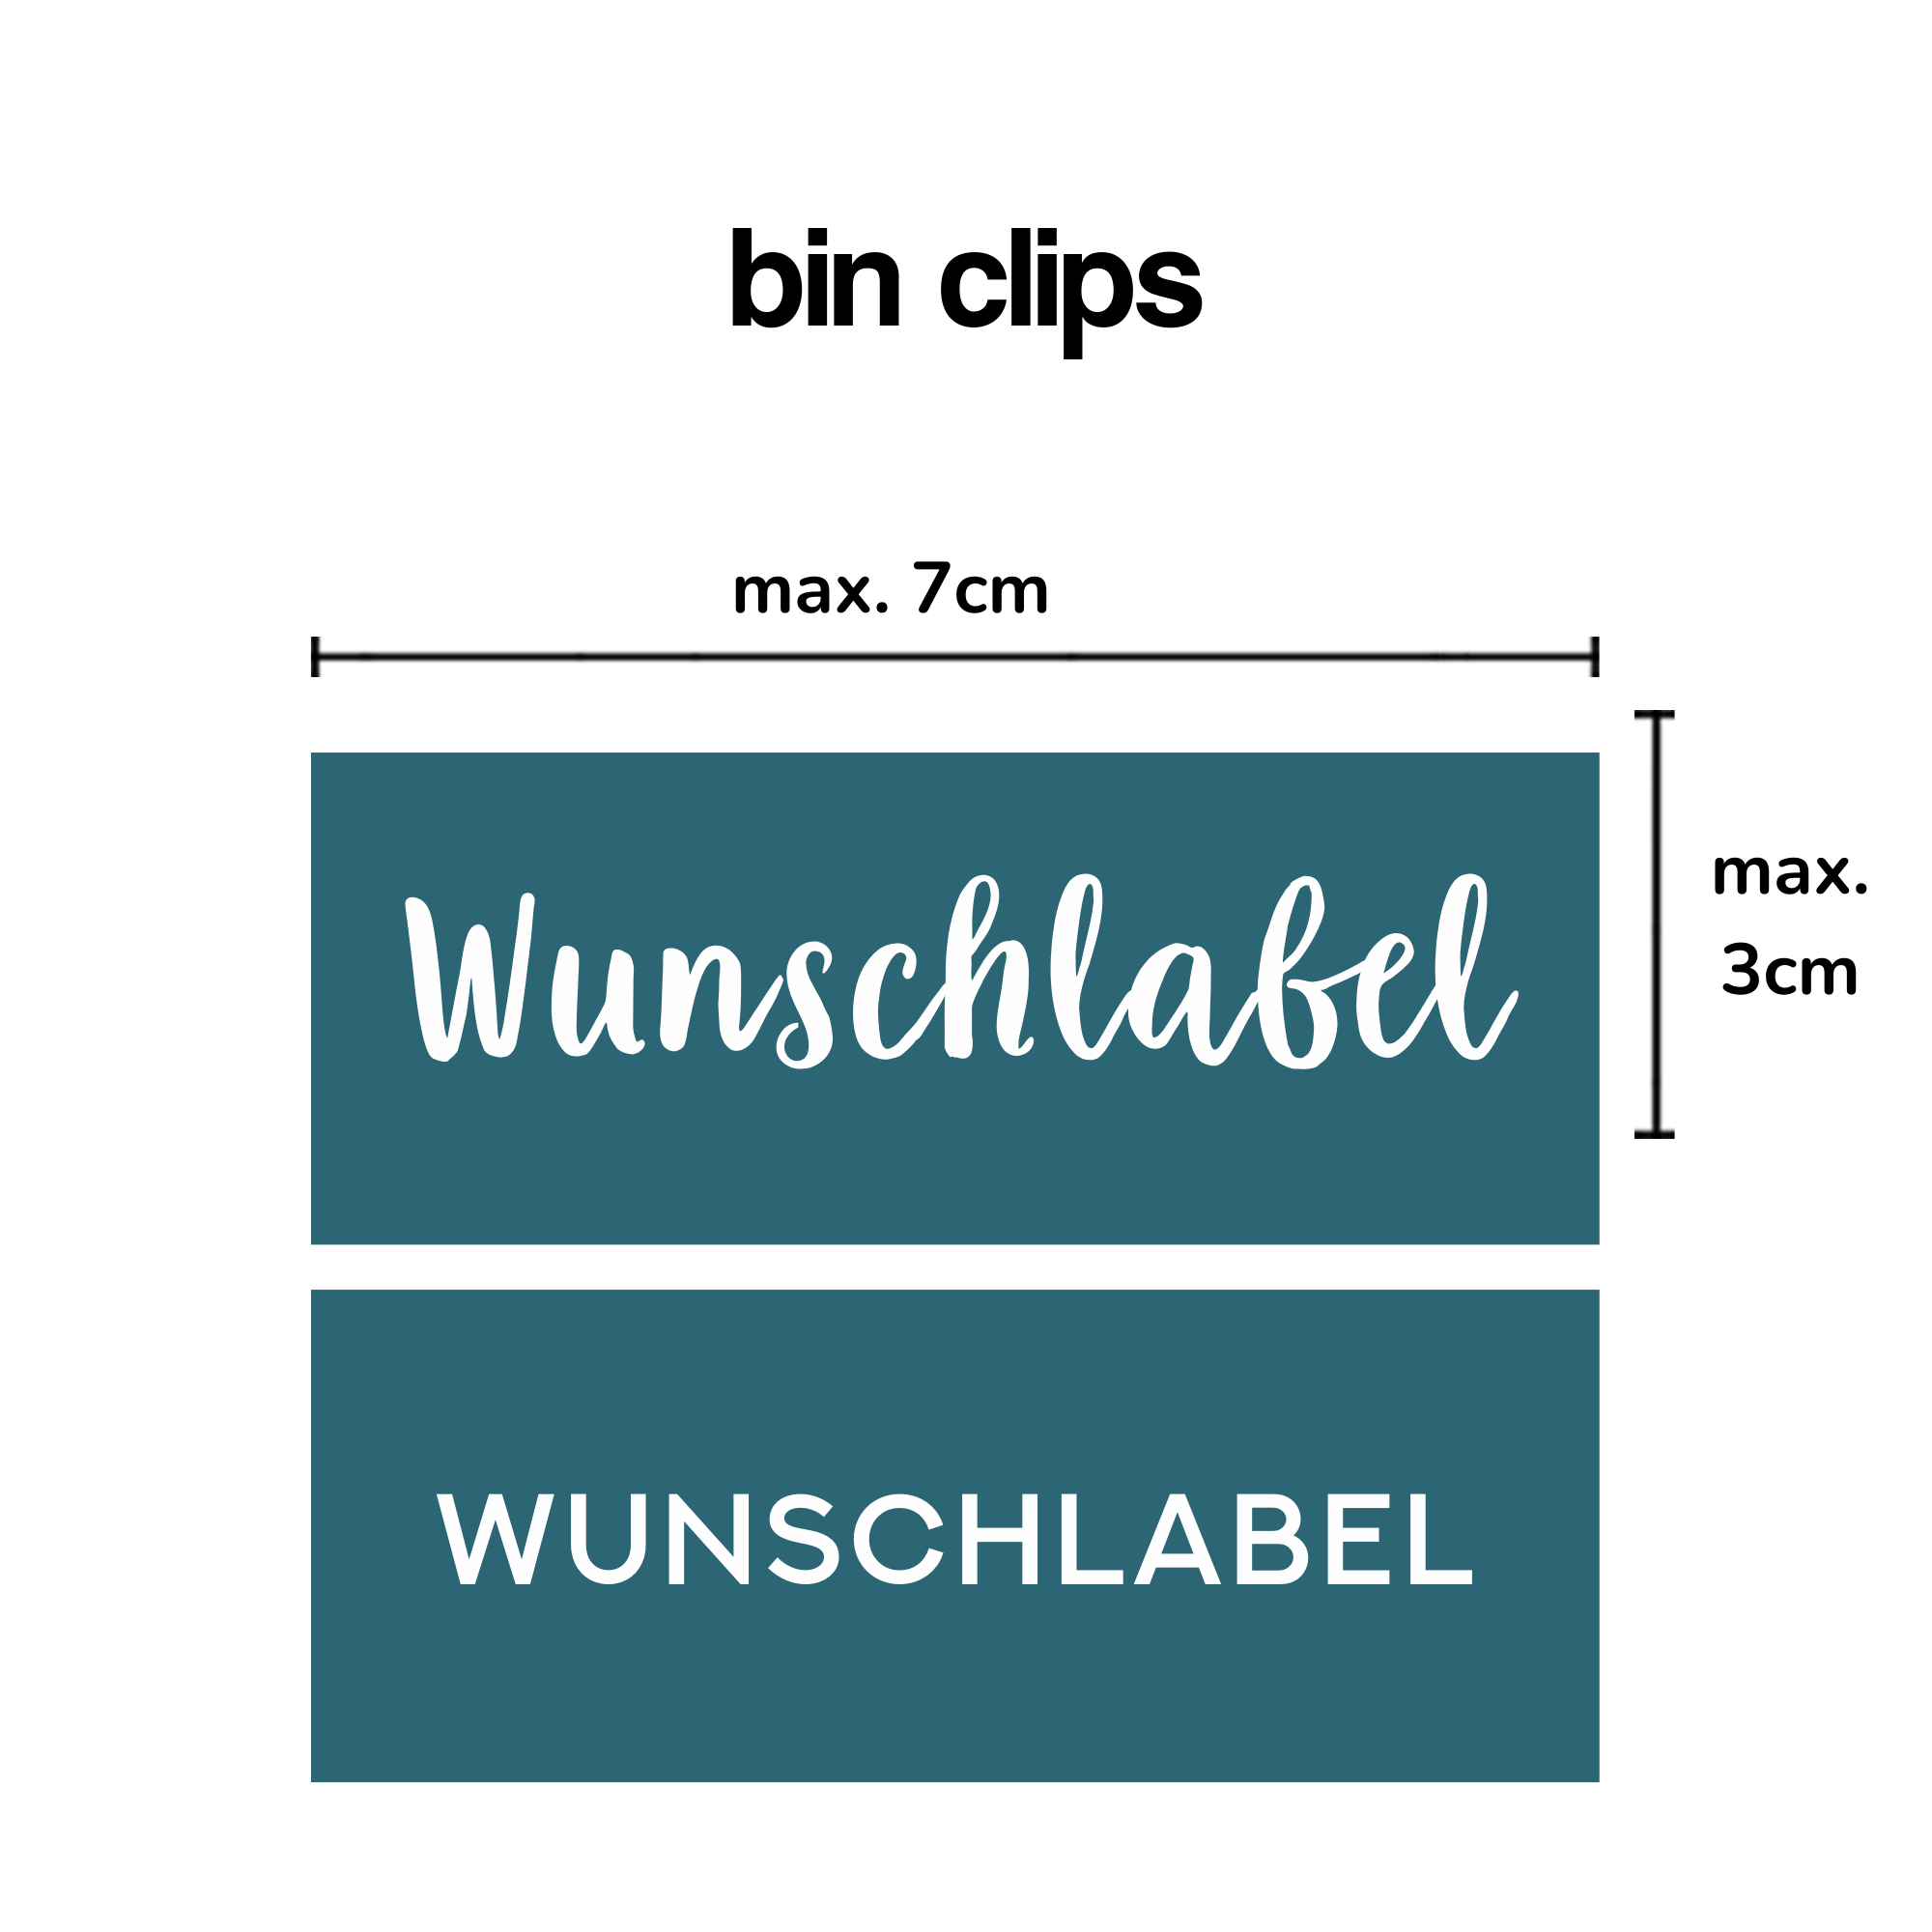 Bin Clips Label